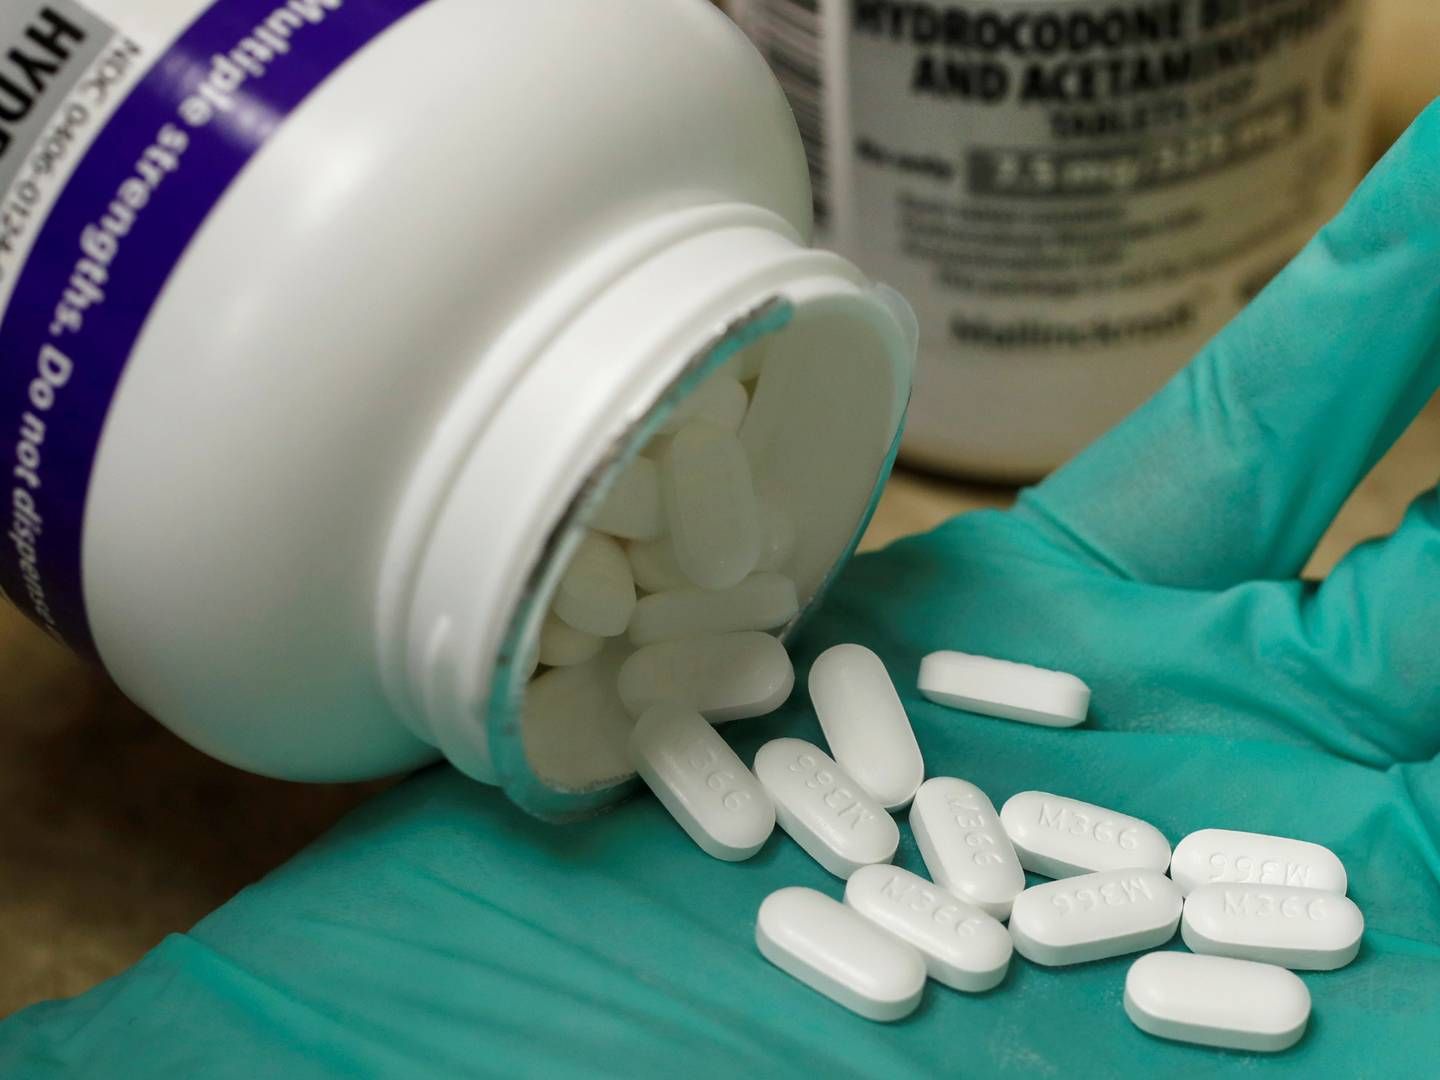 Purdues smertestillende Oxicontin er anklaget for at være en af hovedårsagerne bag opioidkrisen i USA. | Foto: George Frey/REUTERS / X02043